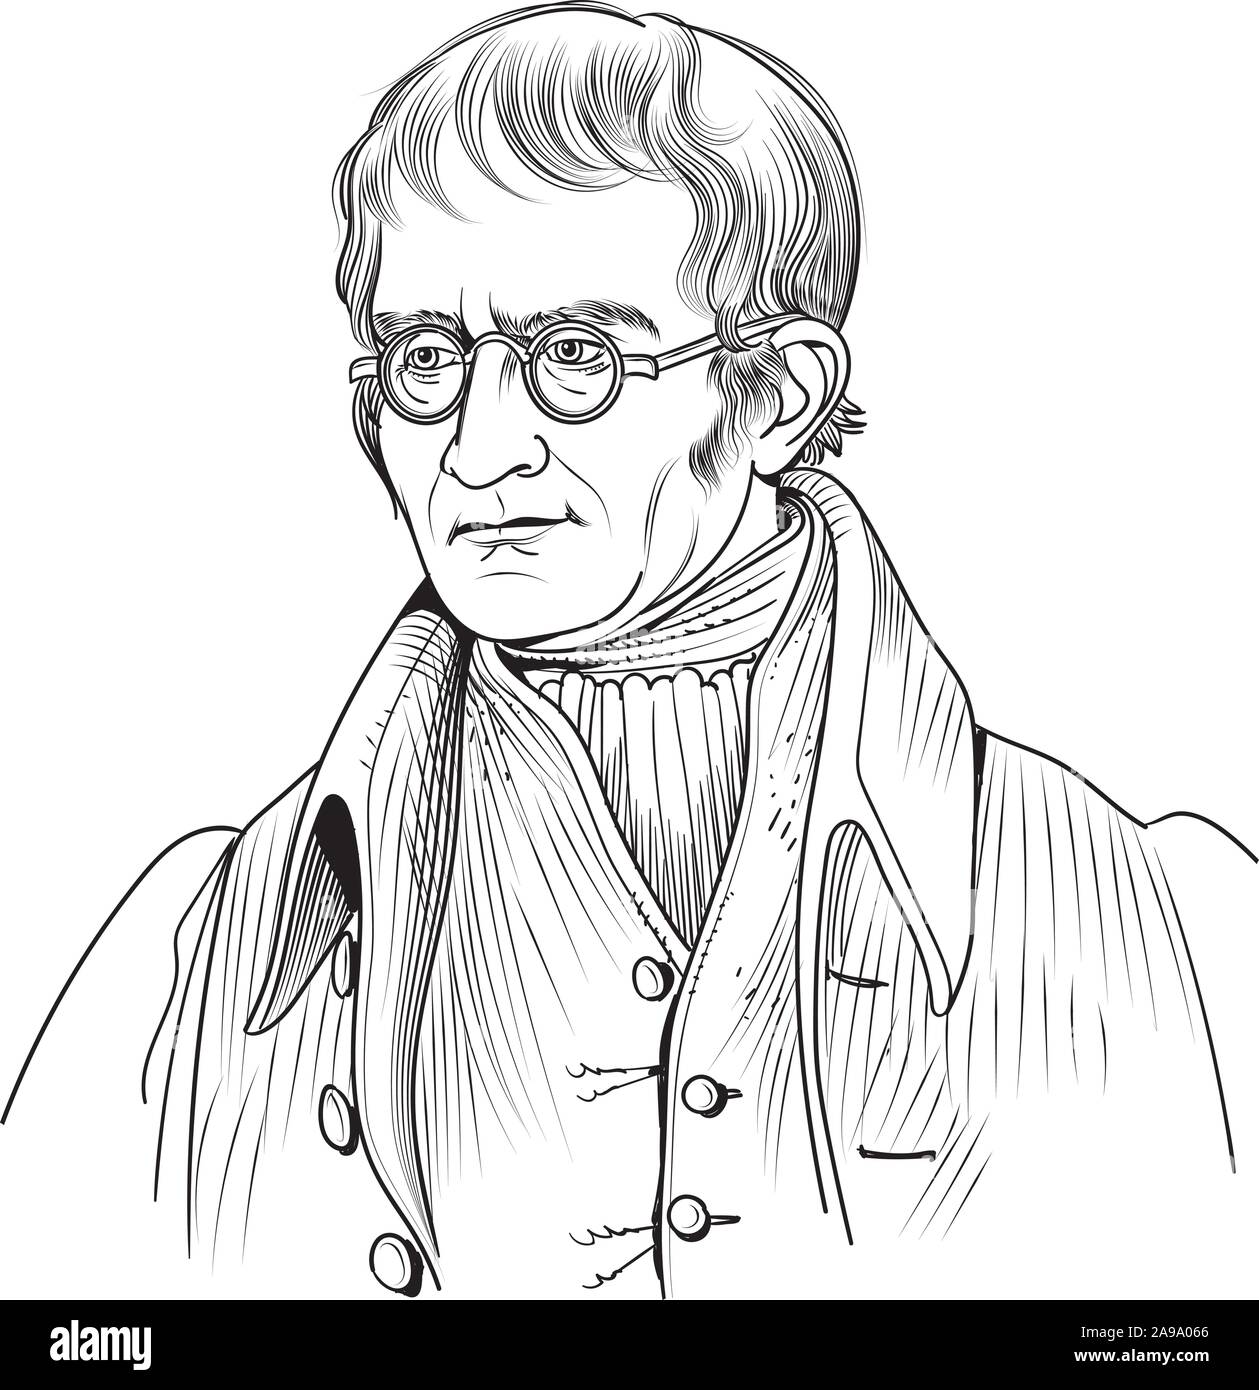 John Dalton caricature portrait. C'était un chimiste anglais, physicien et météorologue. Il a présenté la théorie atomique moderne en chimie. Illustration de Vecteur